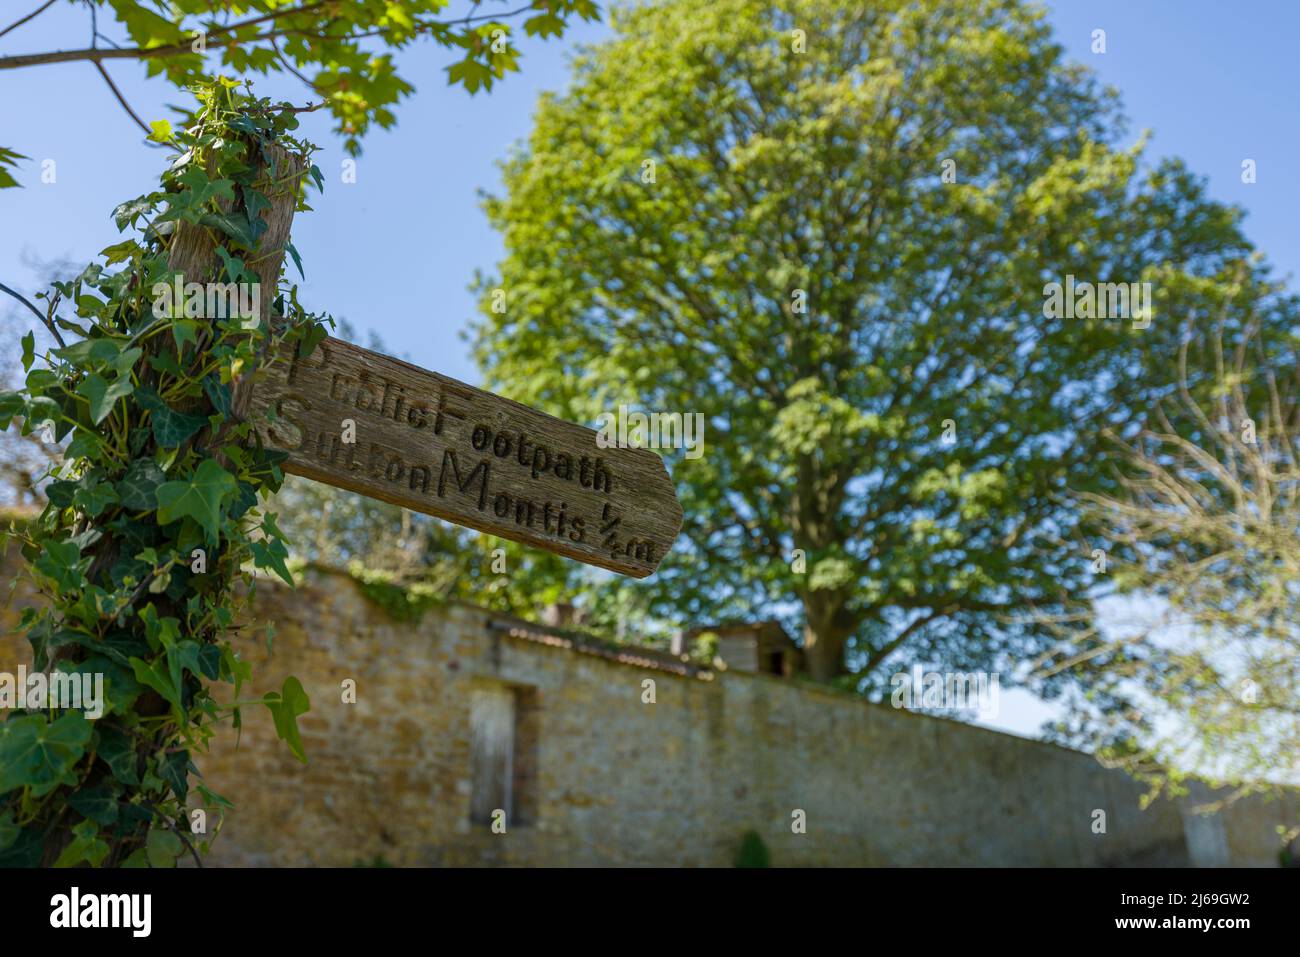 Un sentier public signale le village de pf Sutton Montis, Somerset, Angleterre. Banque D'Images